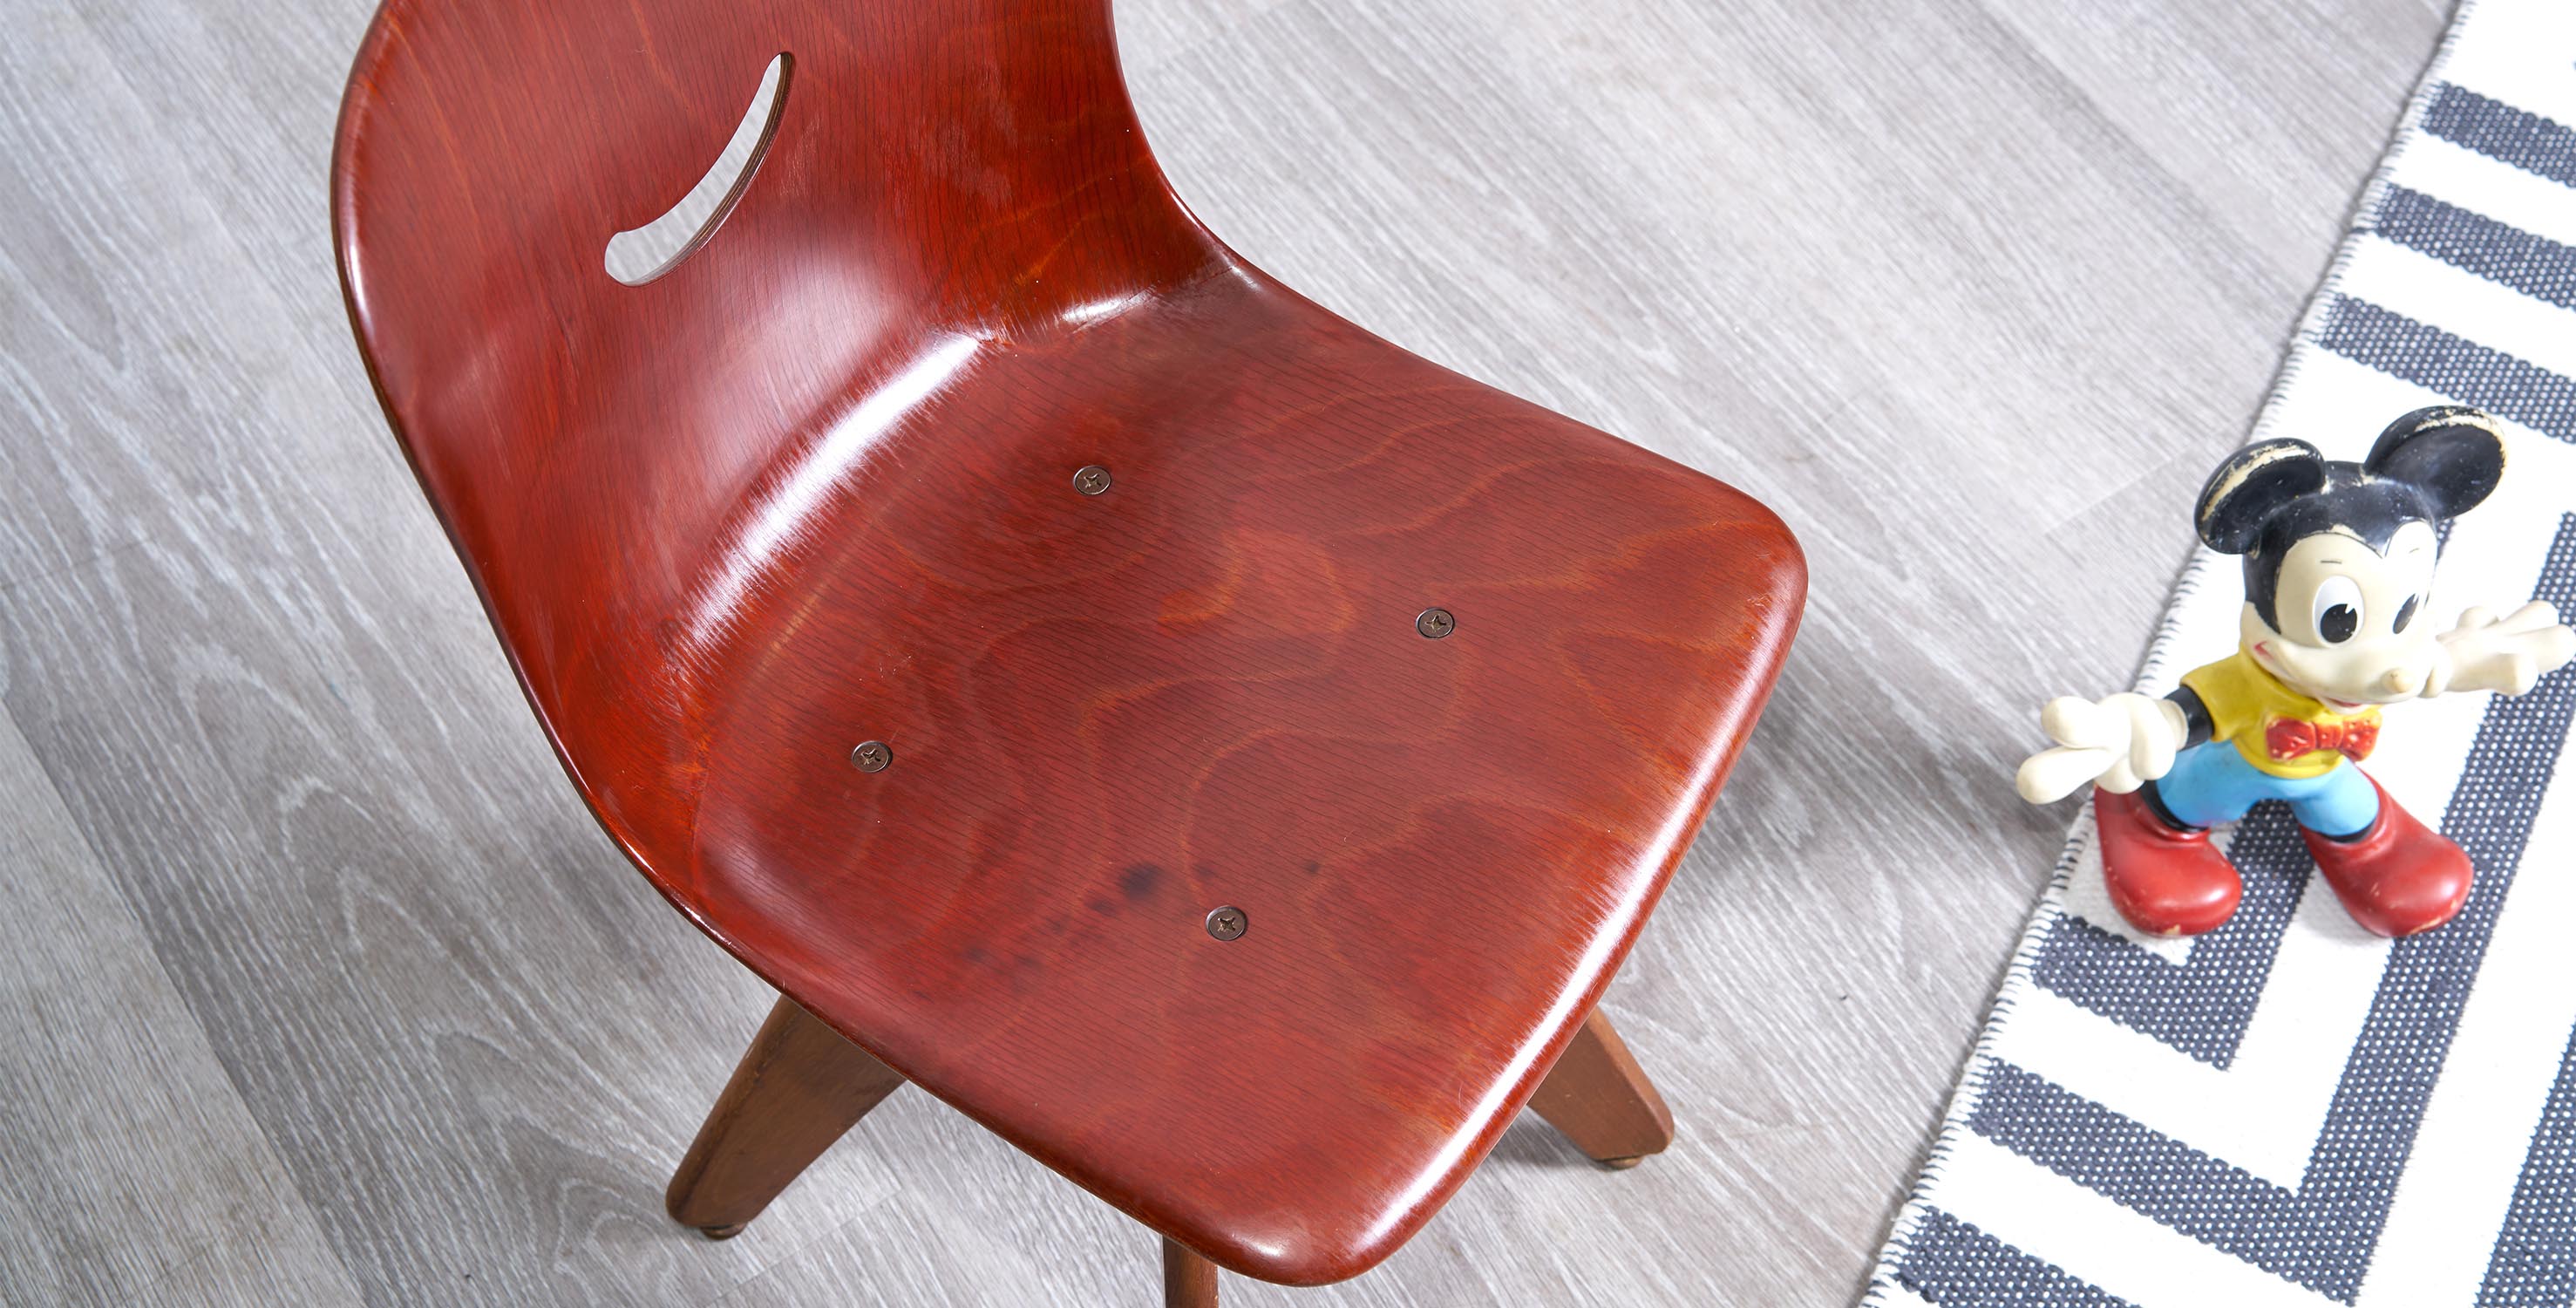 chaise enfant vintage, chaise vintage, chaise scandinave vintage, mobilier enfant, mobilier vintage, flototto, bauhaus